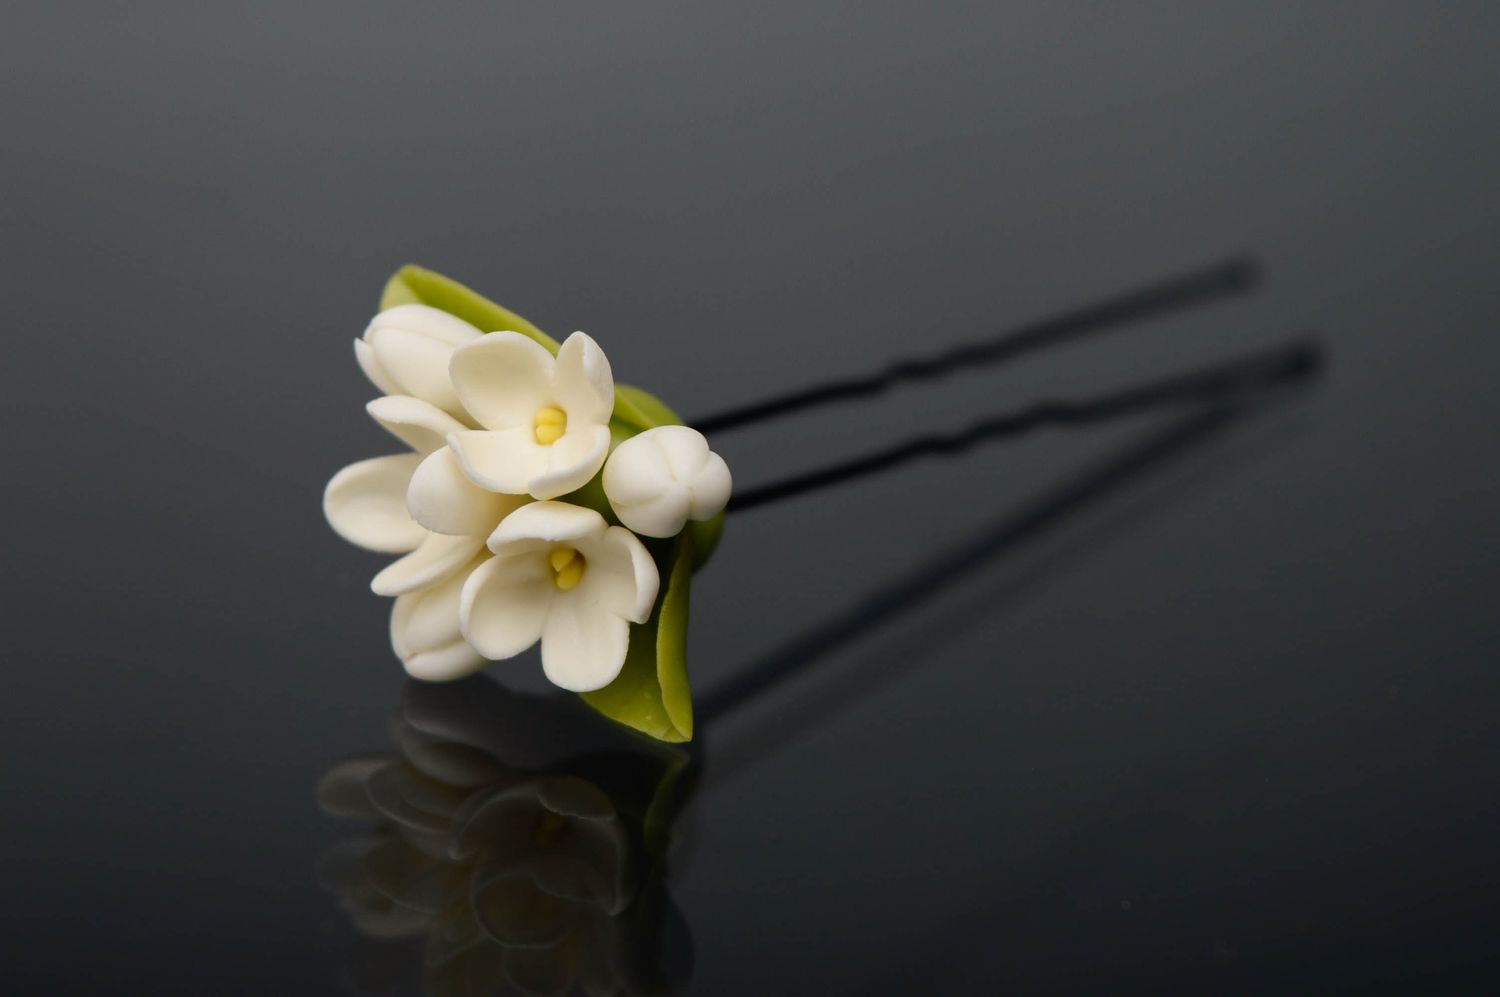 Épingle à cheveux en porcelaine froide Fleur photo 1